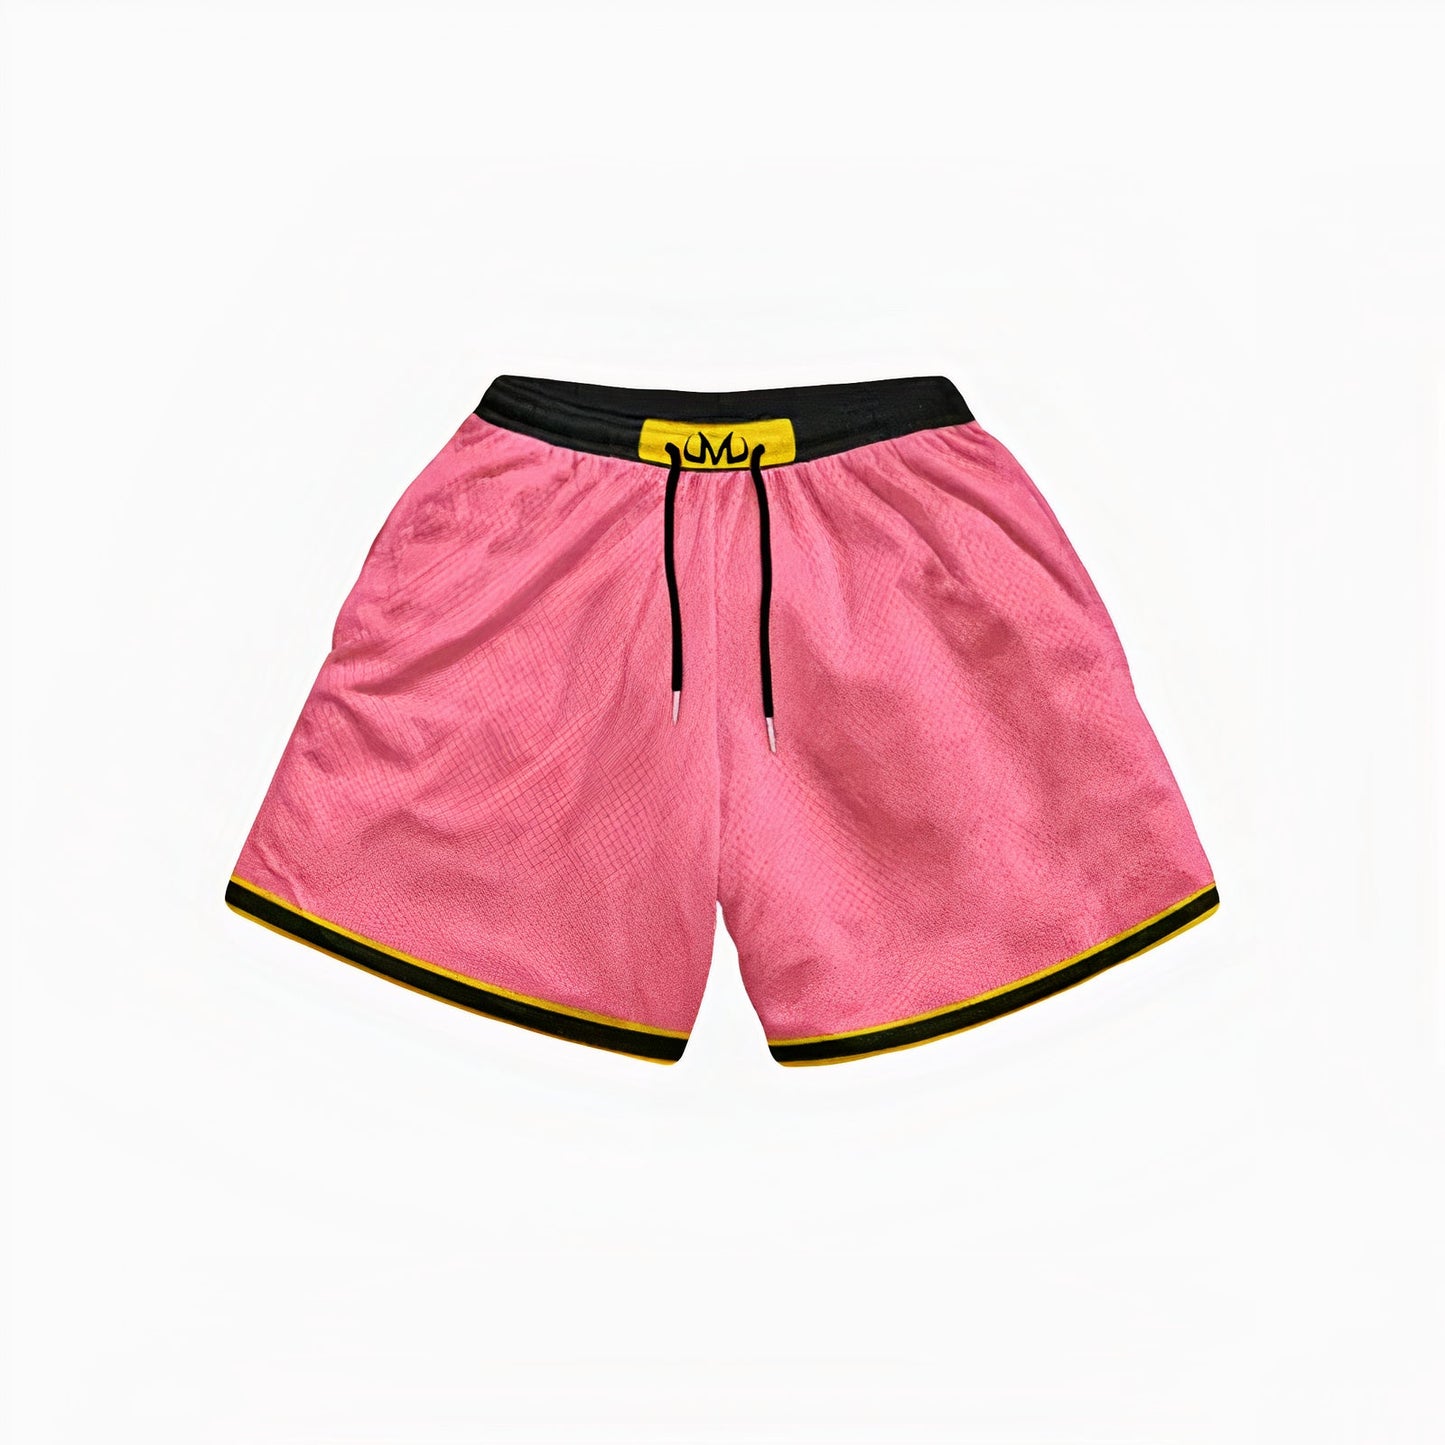 Majin Buu Pink Shorts